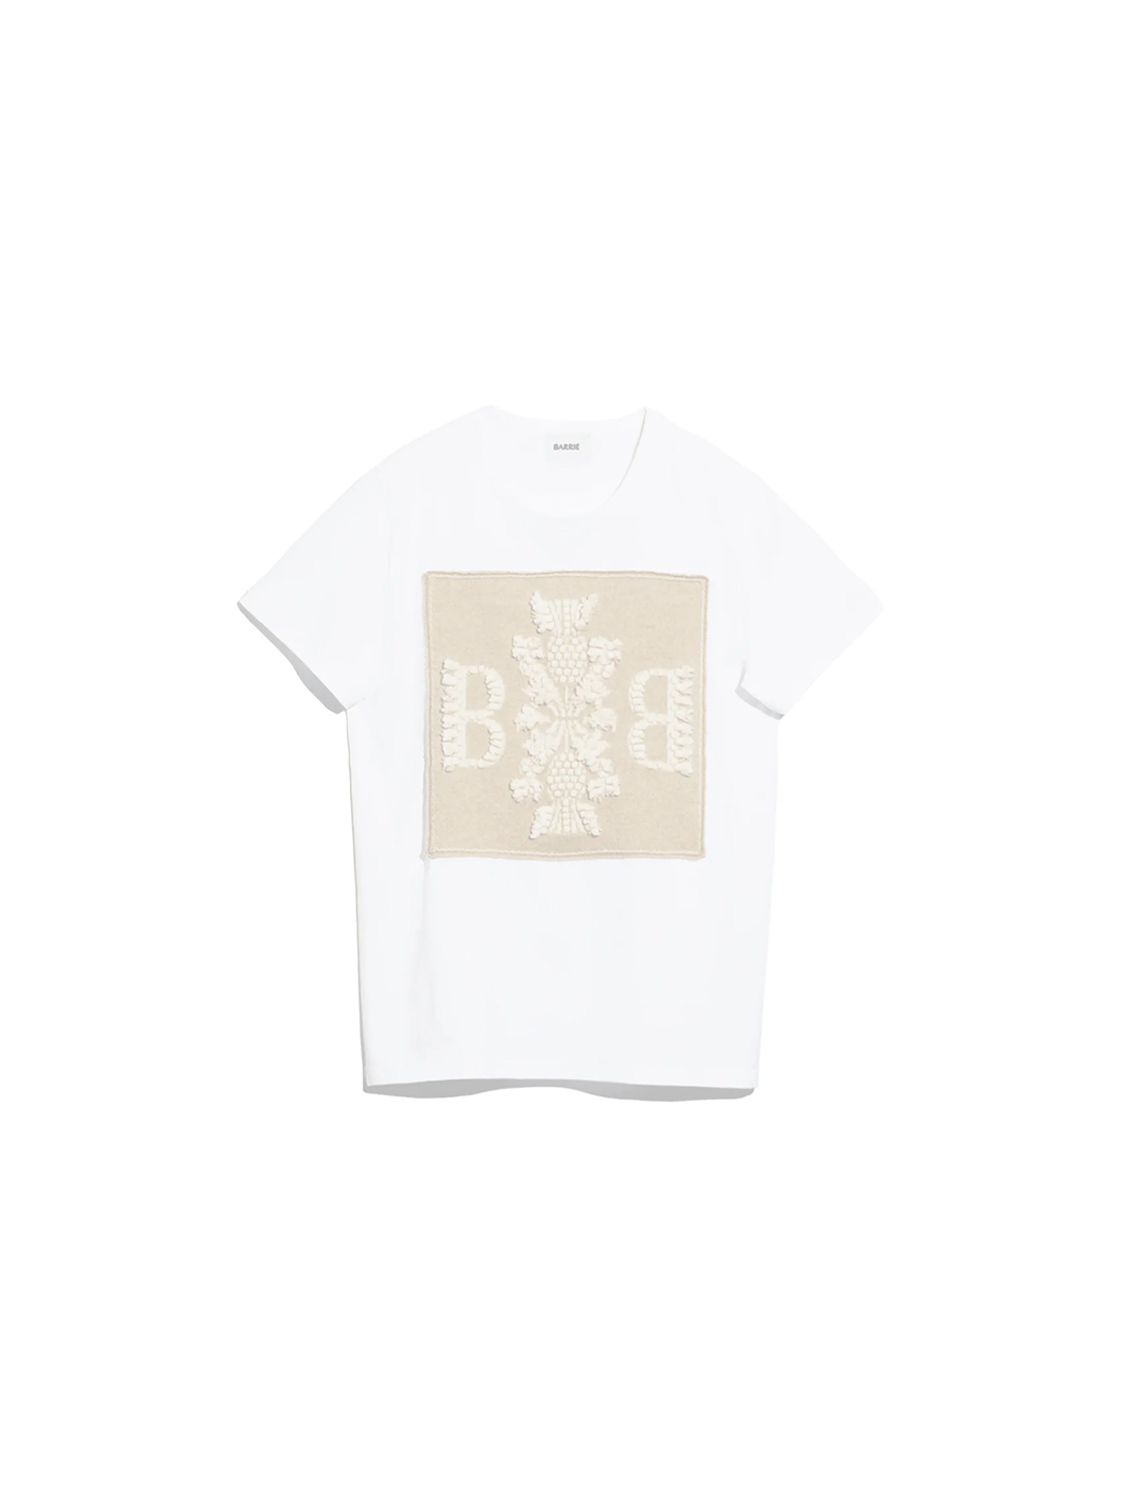 Barrie Baumwoll-T-Shirt mit Kaschmir-Applikation Farbe: creme Größe: S creme S